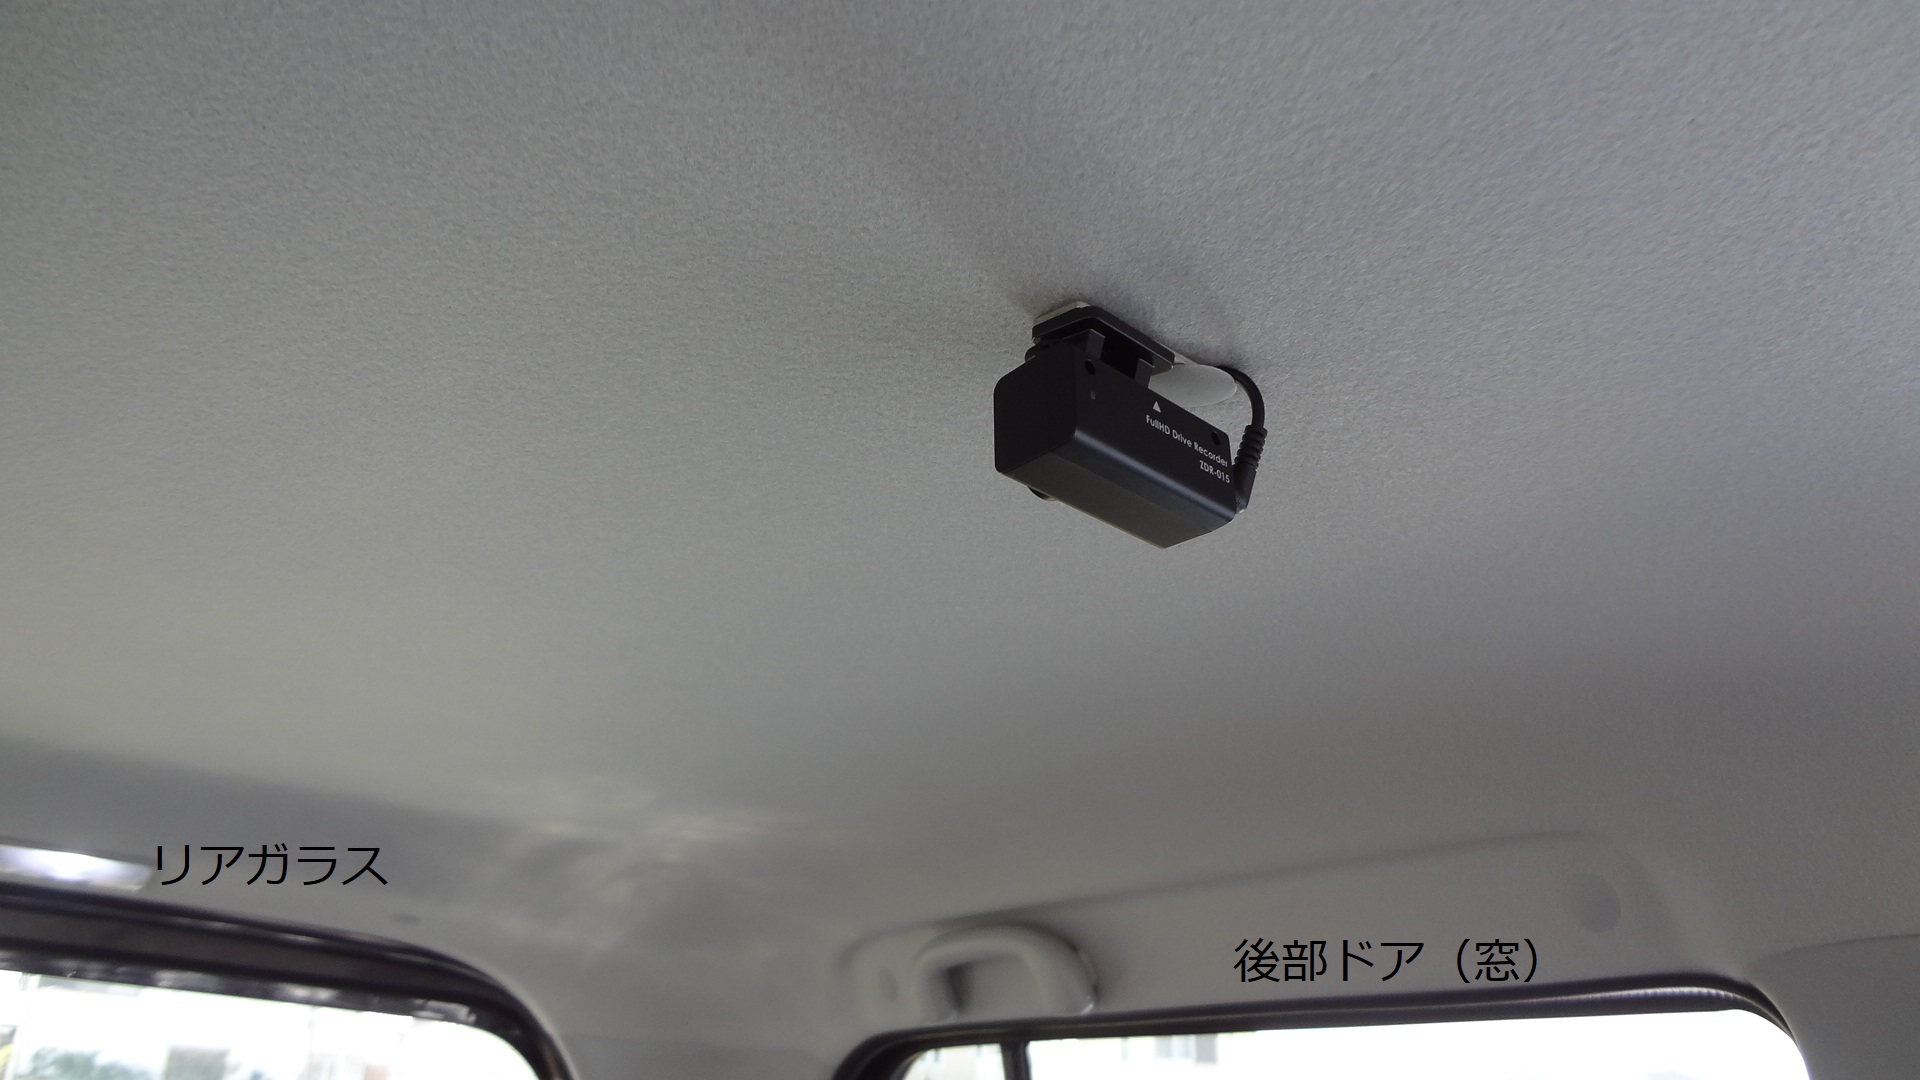 ドライブレコーダー 後方カメラで側面録画と駐車監視バッテリー スズキ ハスラー Mr41s Try Try Try